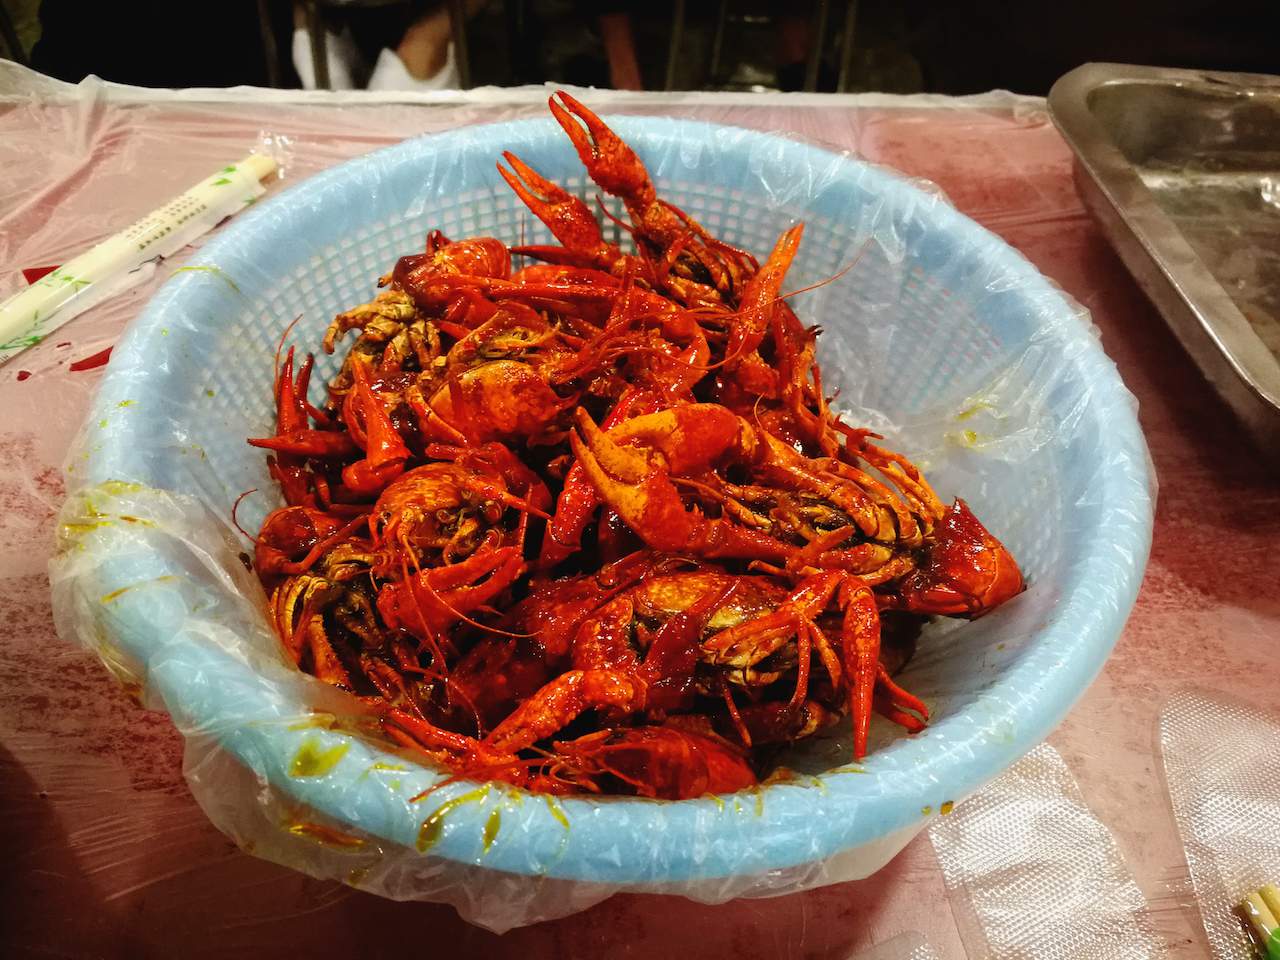 Shanghai crawfish